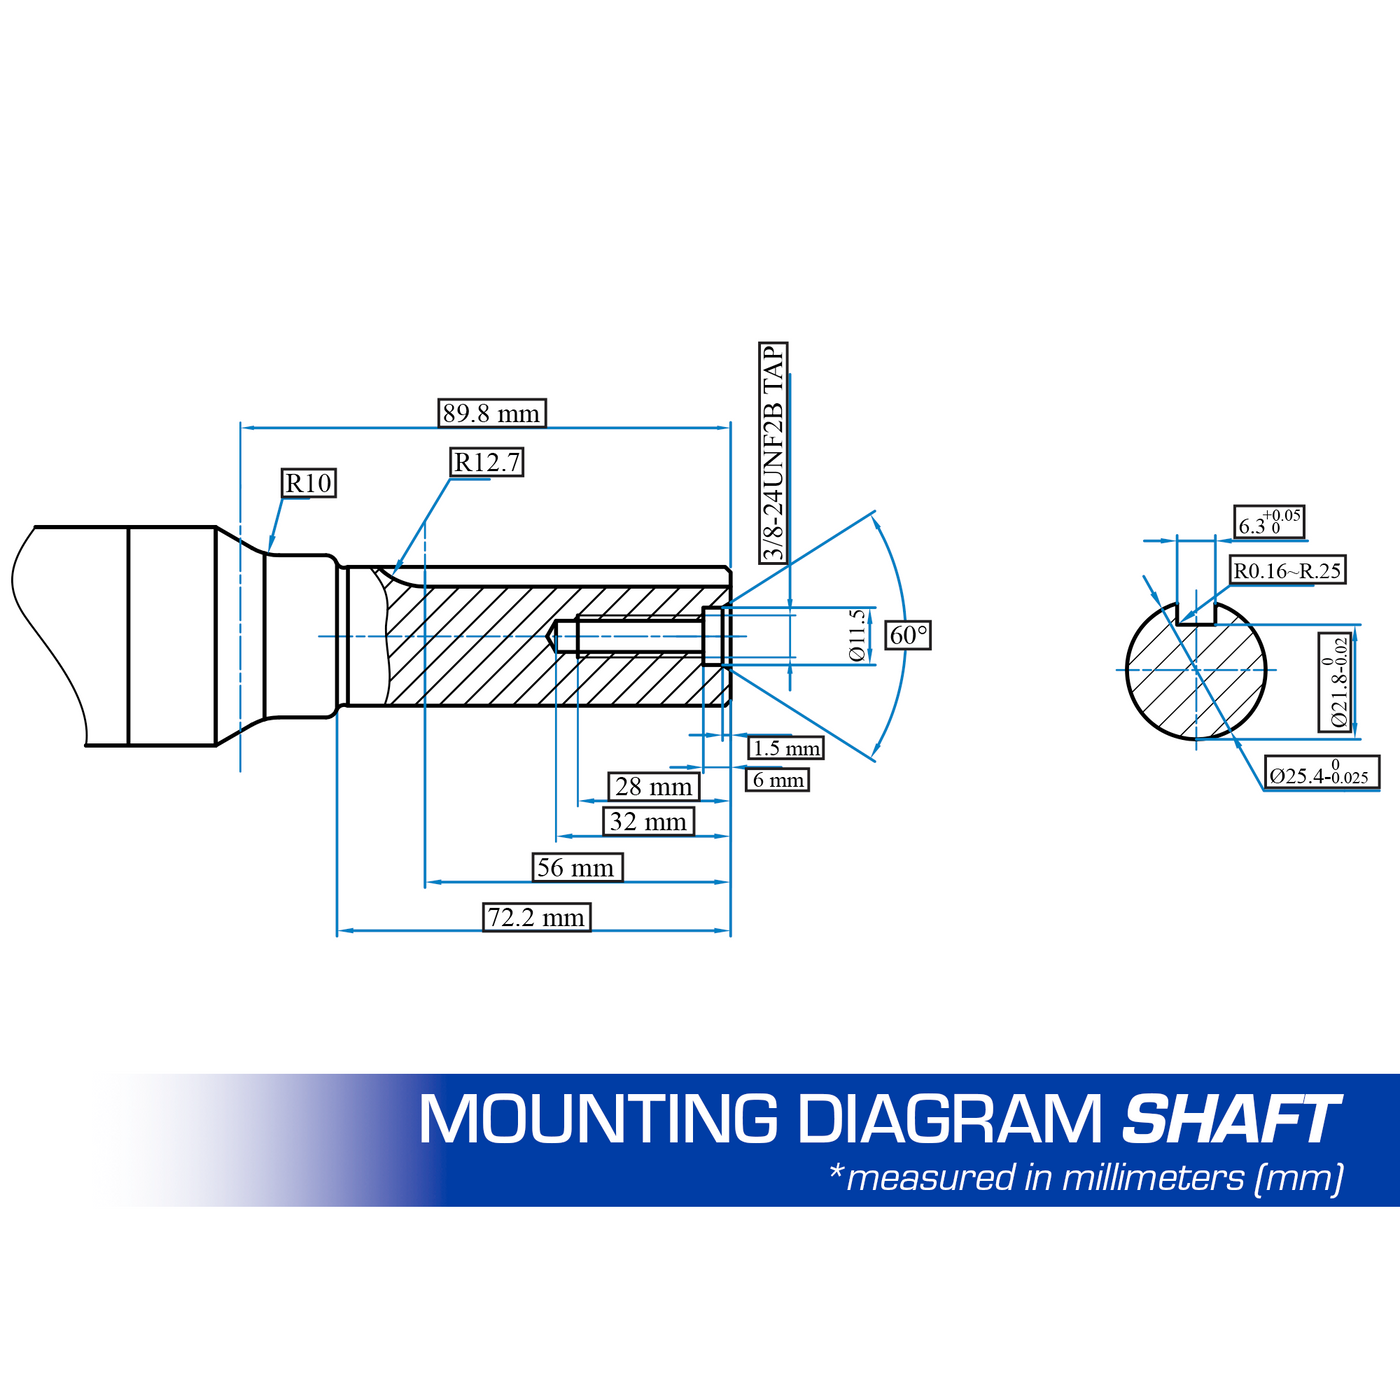 DuroMax  500cc 1-Inch Shaft Recoil Start Gasoline Engine